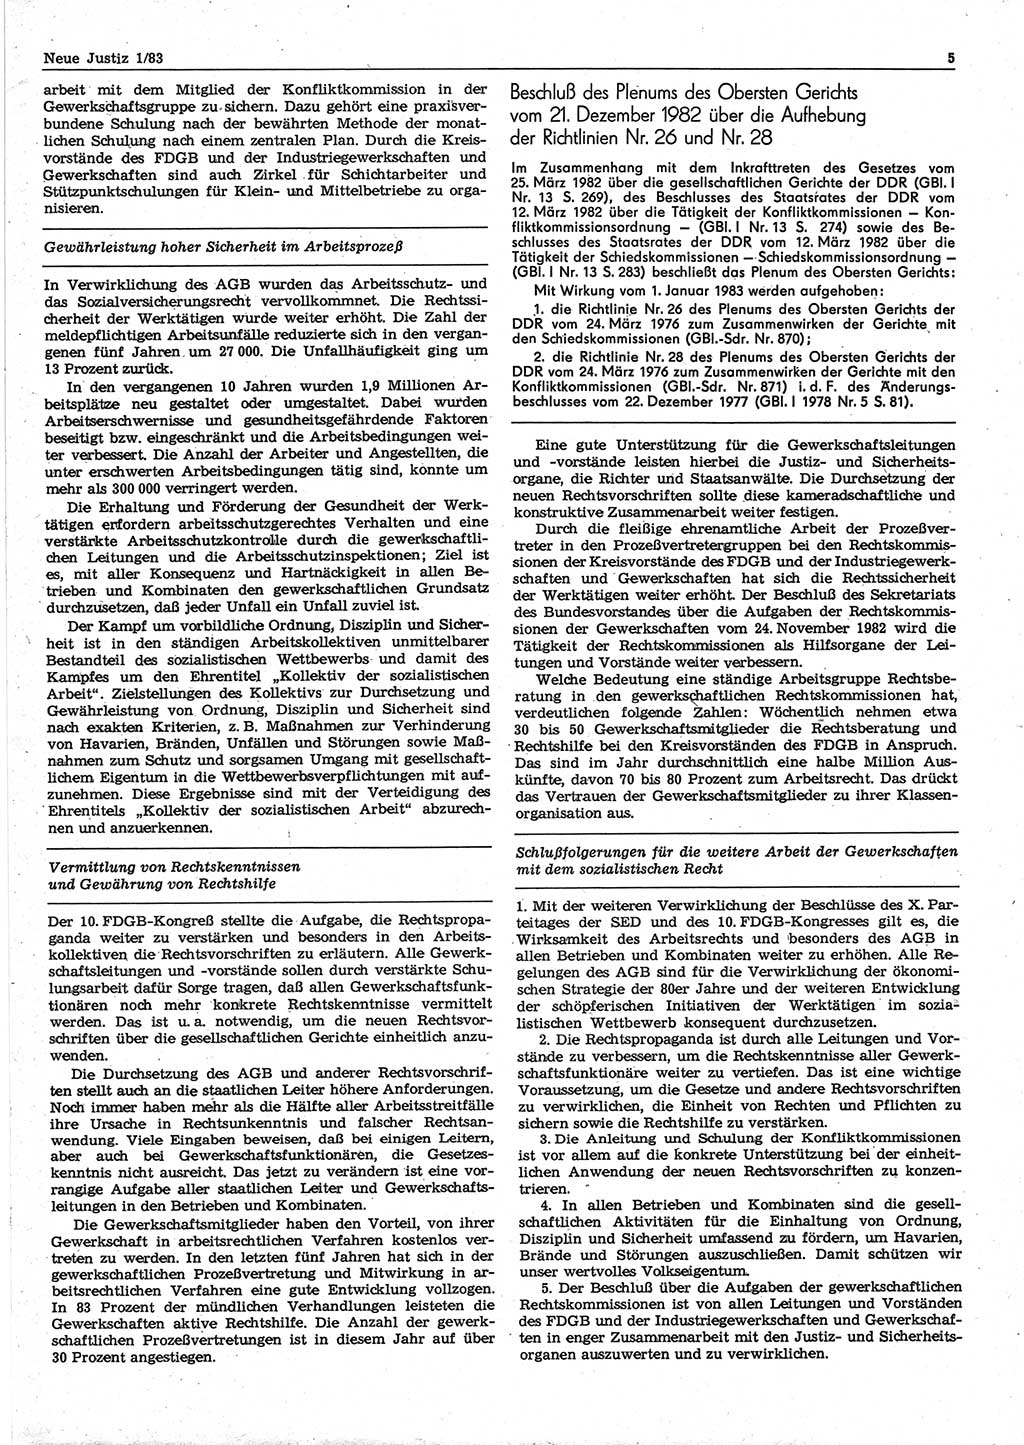 Neue Justiz (NJ), Zeitschrift für sozialistisches Recht und Gesetzlichkeit [Deutsche Demokratische Republik (DDR)], 37. Jahrgang 1983, Seite 5 (NJ DDR 1983, S. 5)